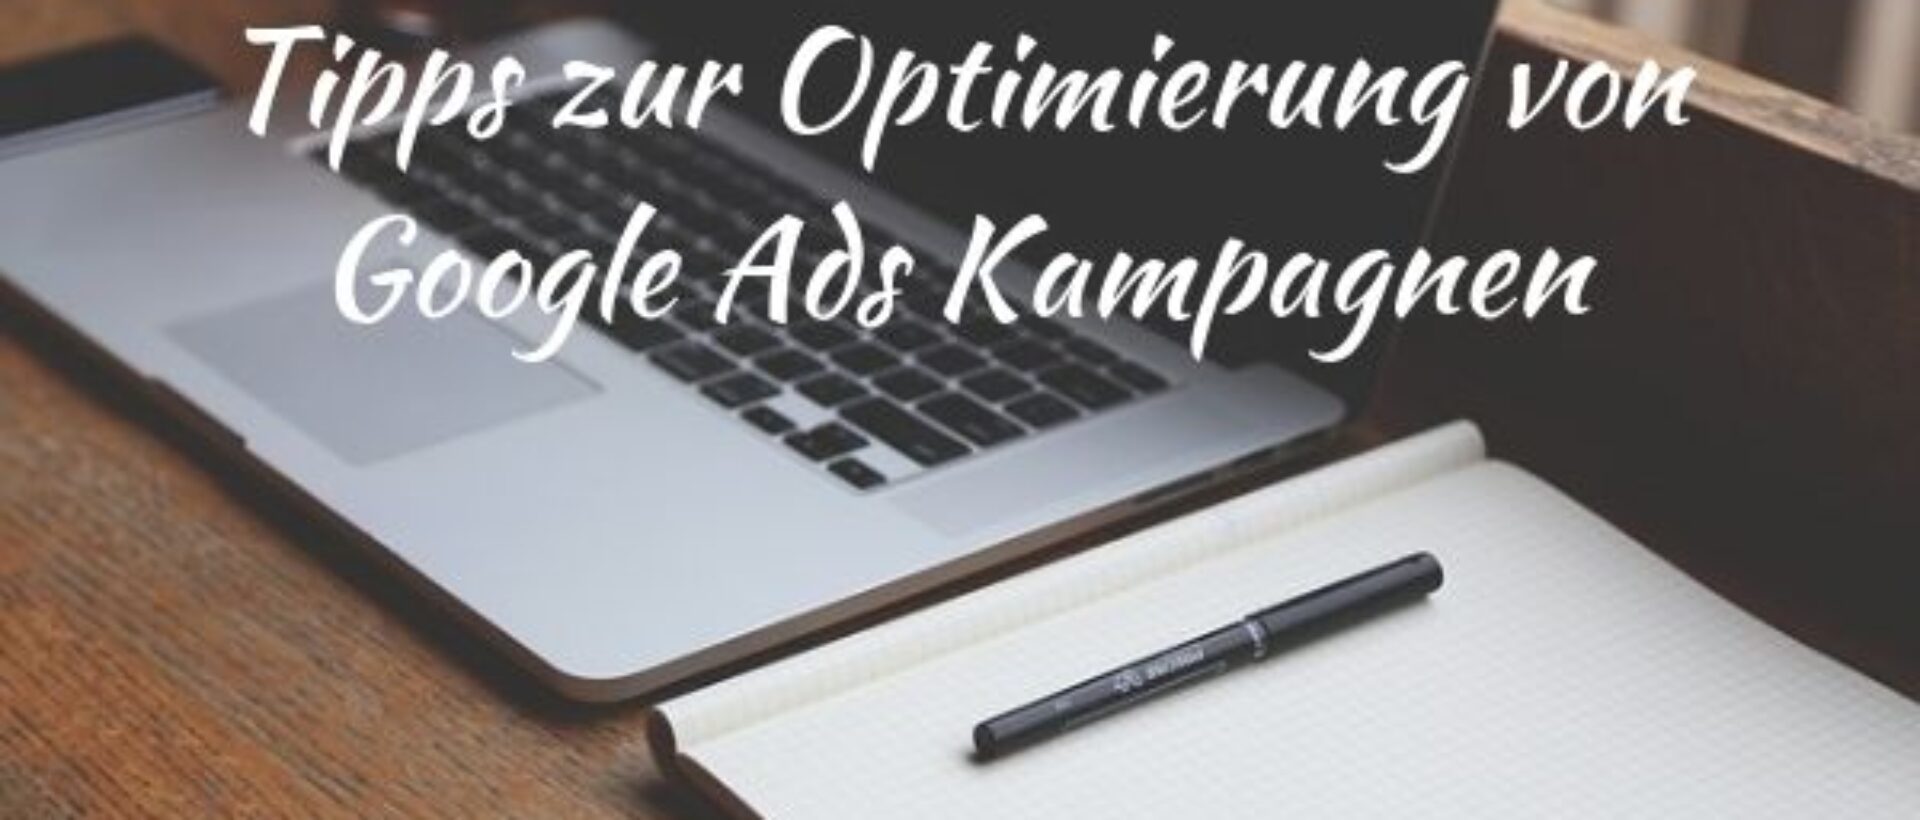 Optimierung von Google Ads Kampagnen